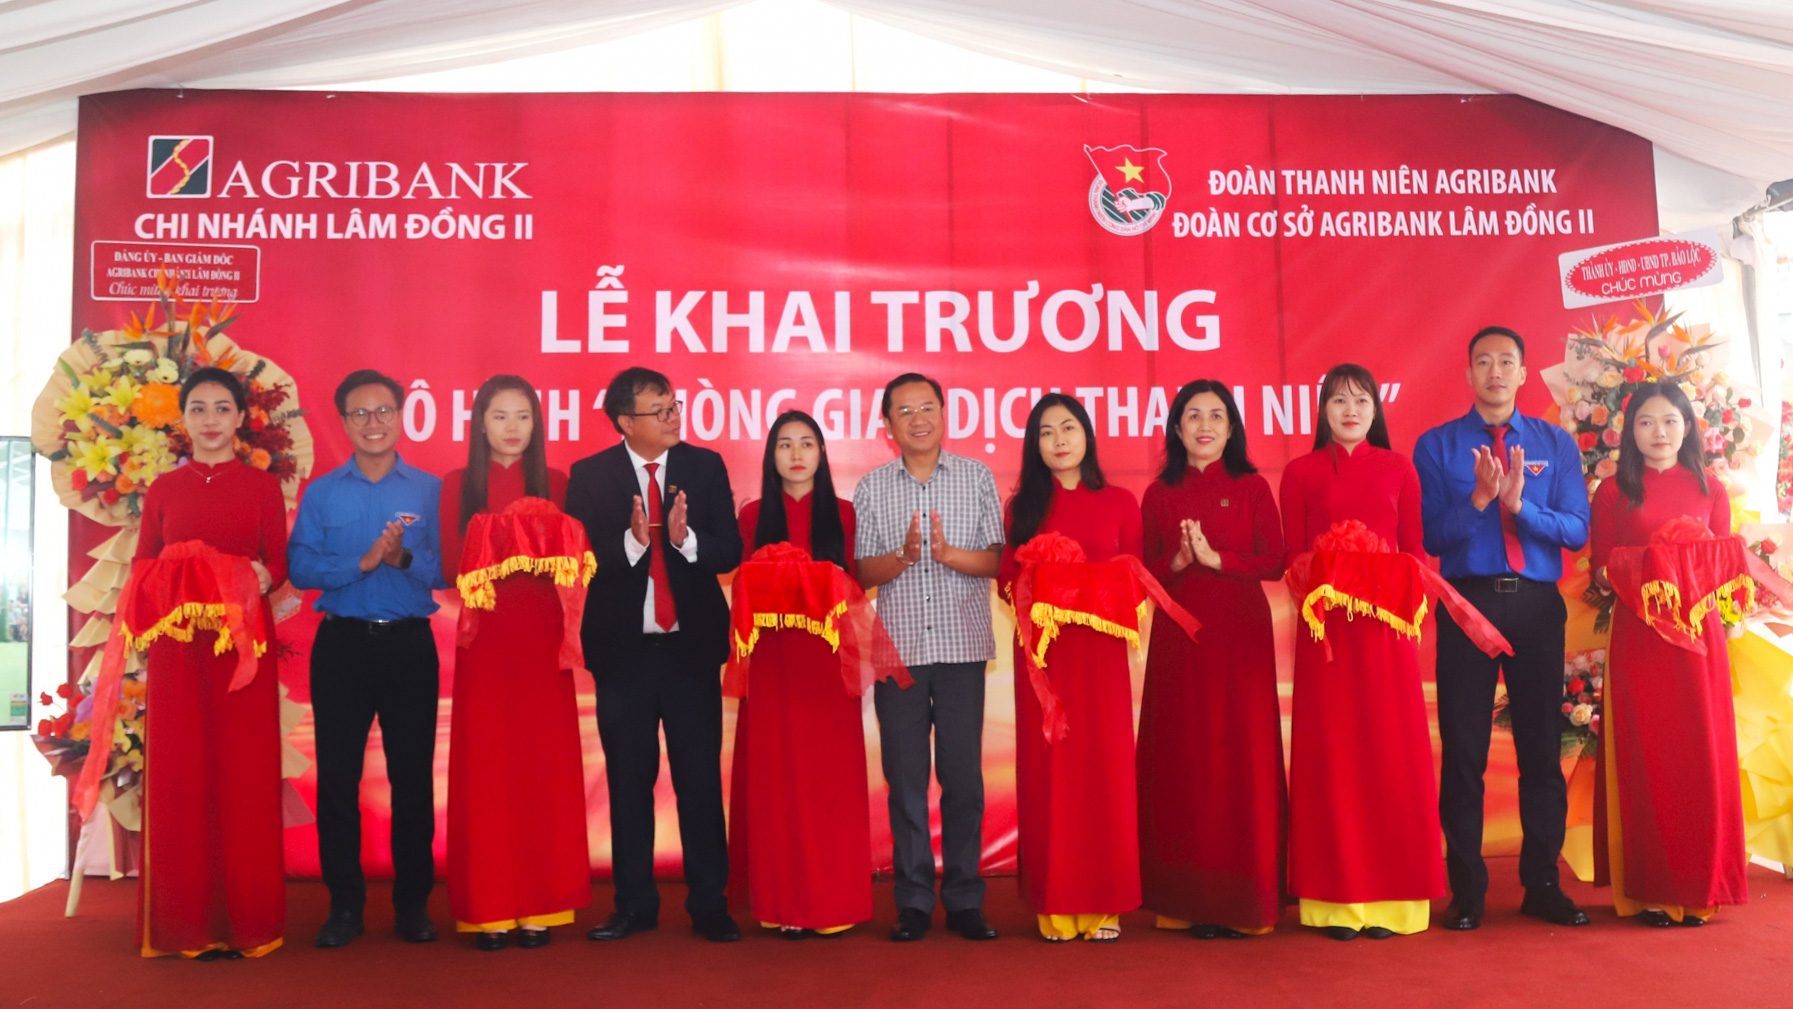 Agribank Lâm Đồng II khai trương Mô hình Phòng giao dịch Thanh niên